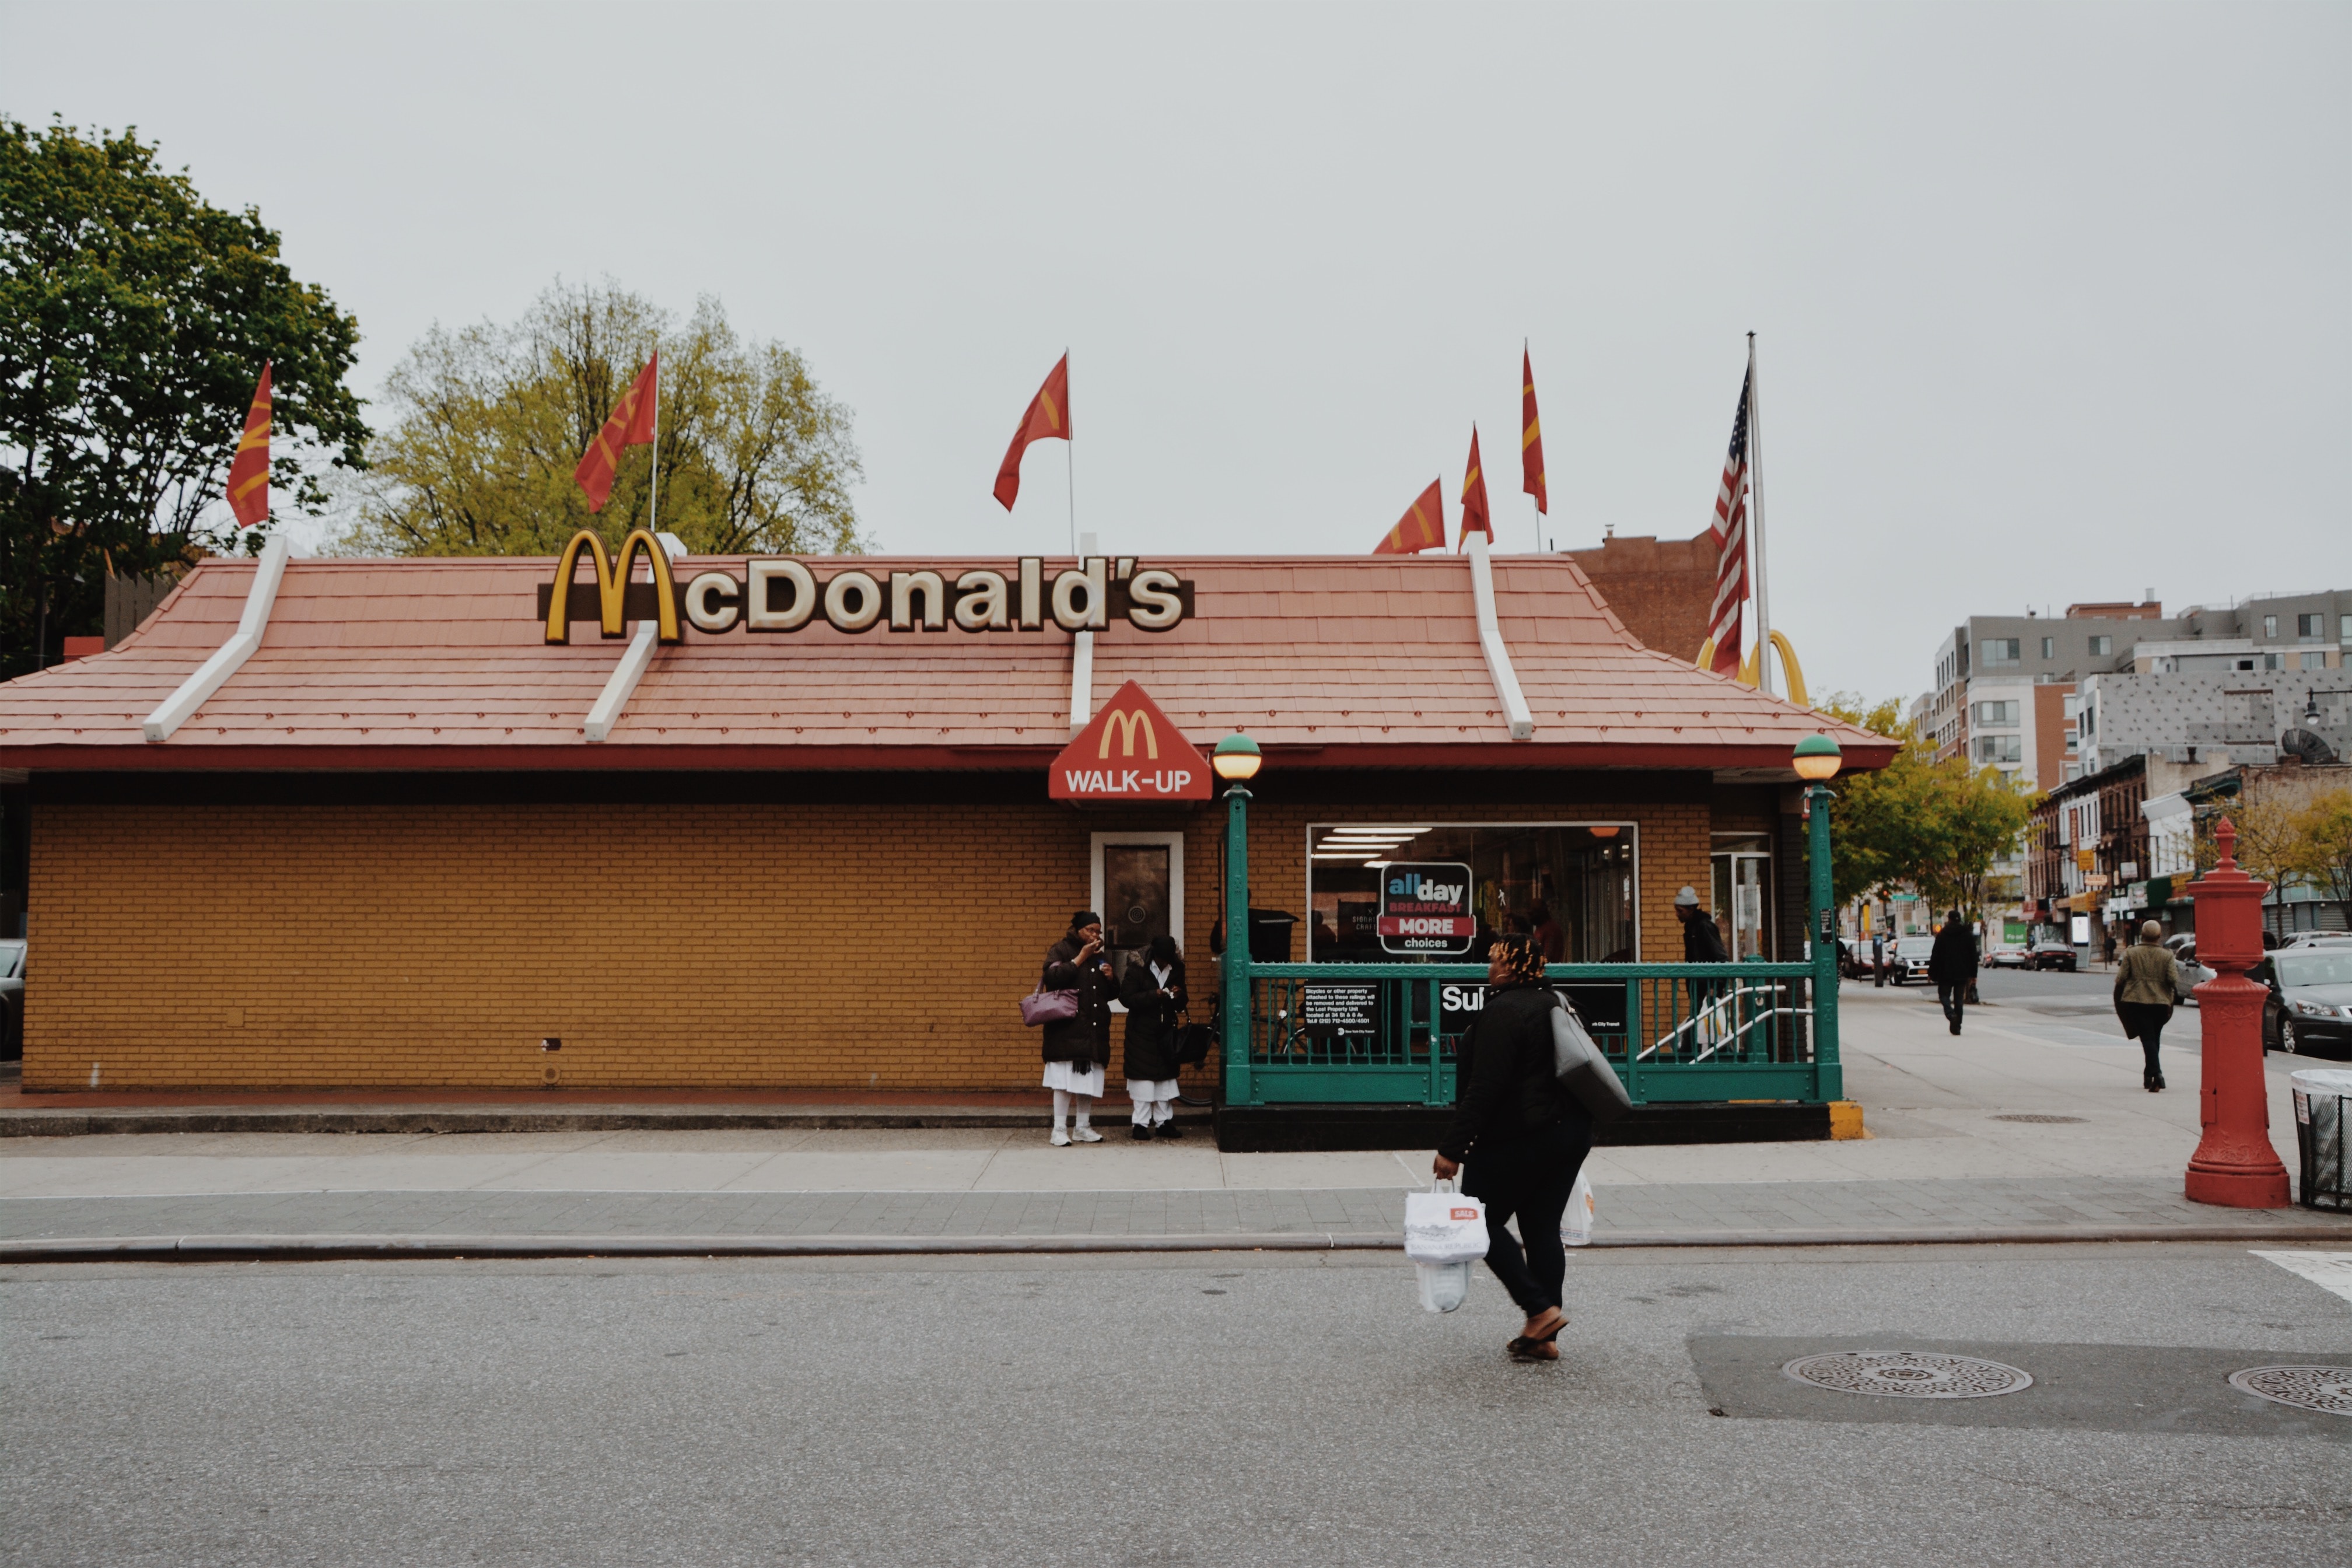 McDonald's a ďalšie významné značky rýchleho občerstvenia – hodnota pre investorov a vyhliadky